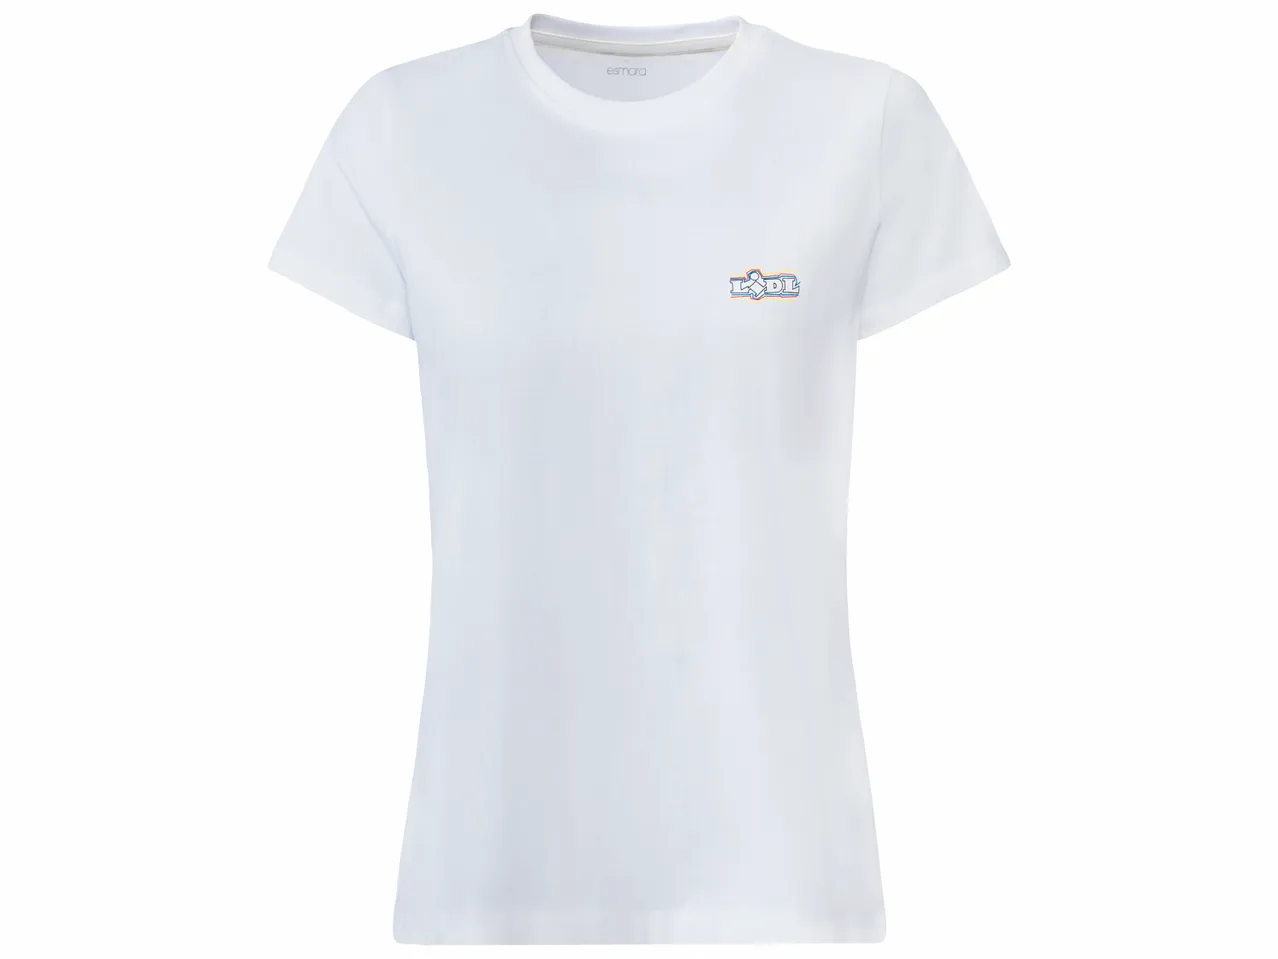 T-shirt LIDL femme , prezzo 5.99 EUR 
T-shirt LIDL femme 
- Du S au XL selon modèle.
- ...